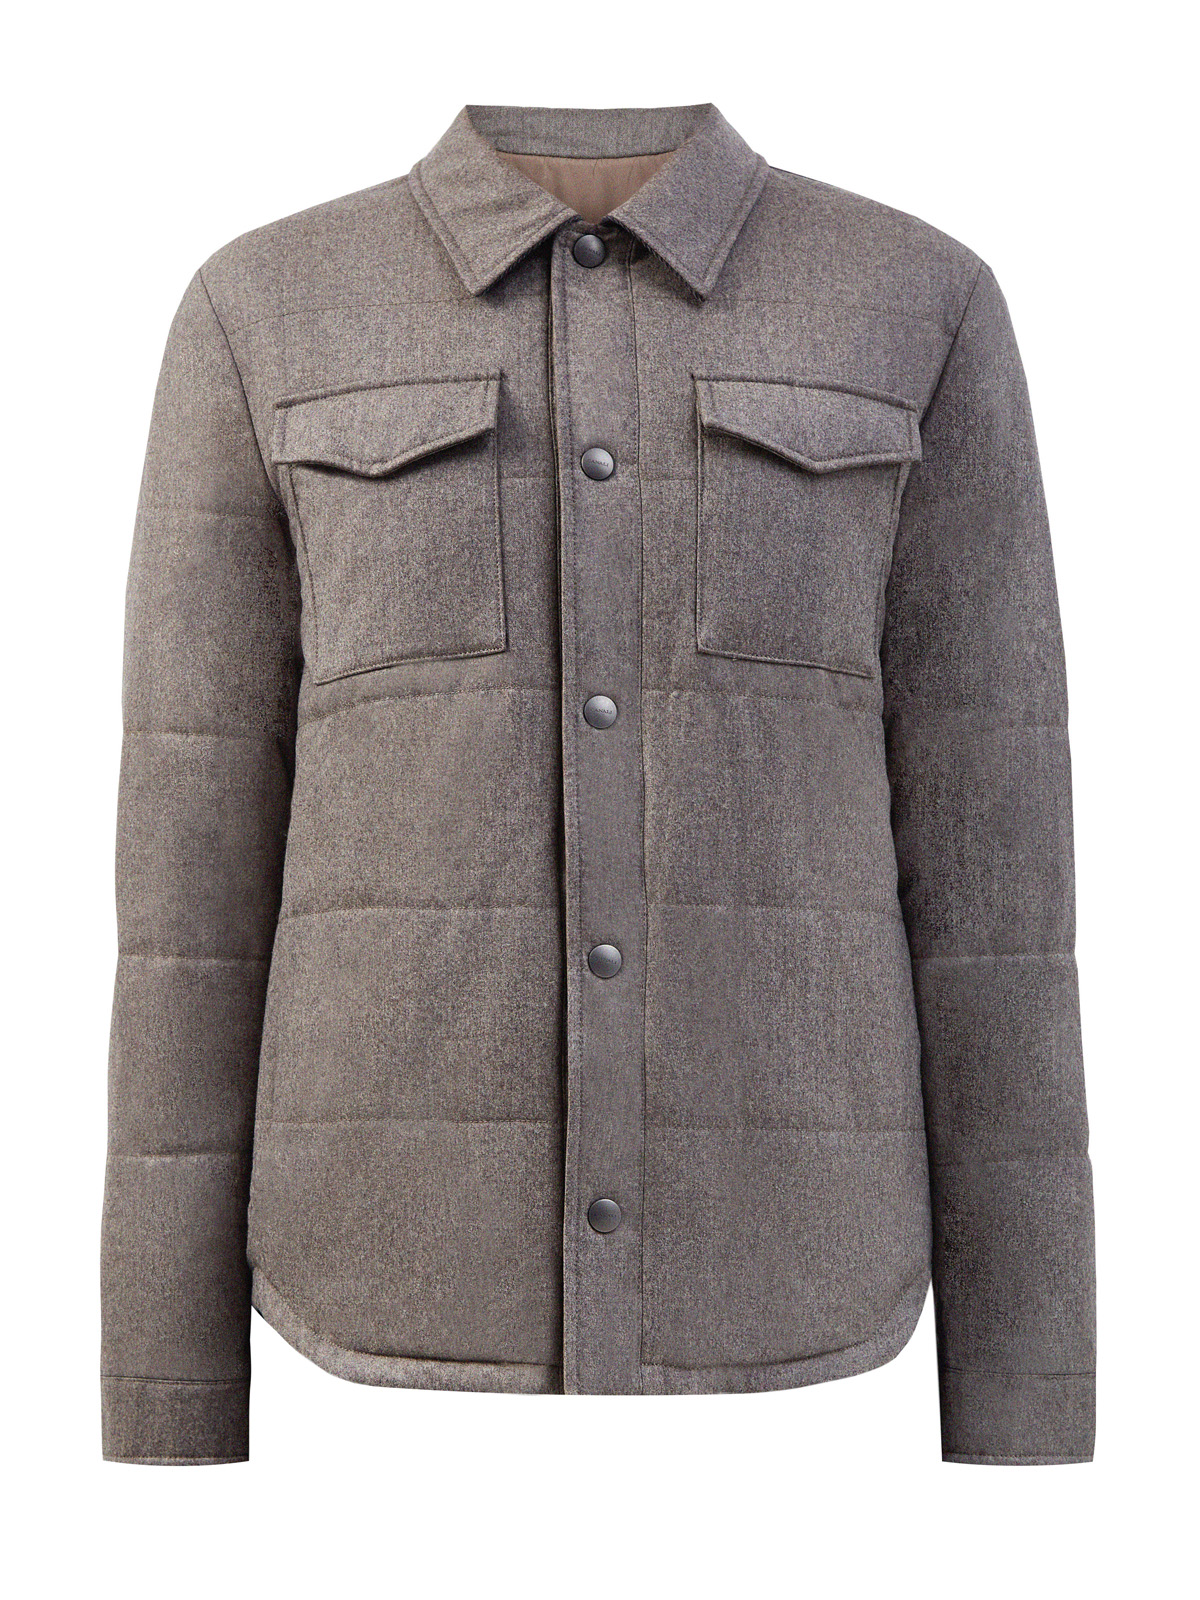 Утепленная куртка 2 в 1 из стеганой шерсти и кашемира CANALI, цвет мульти, размер 52;56;48